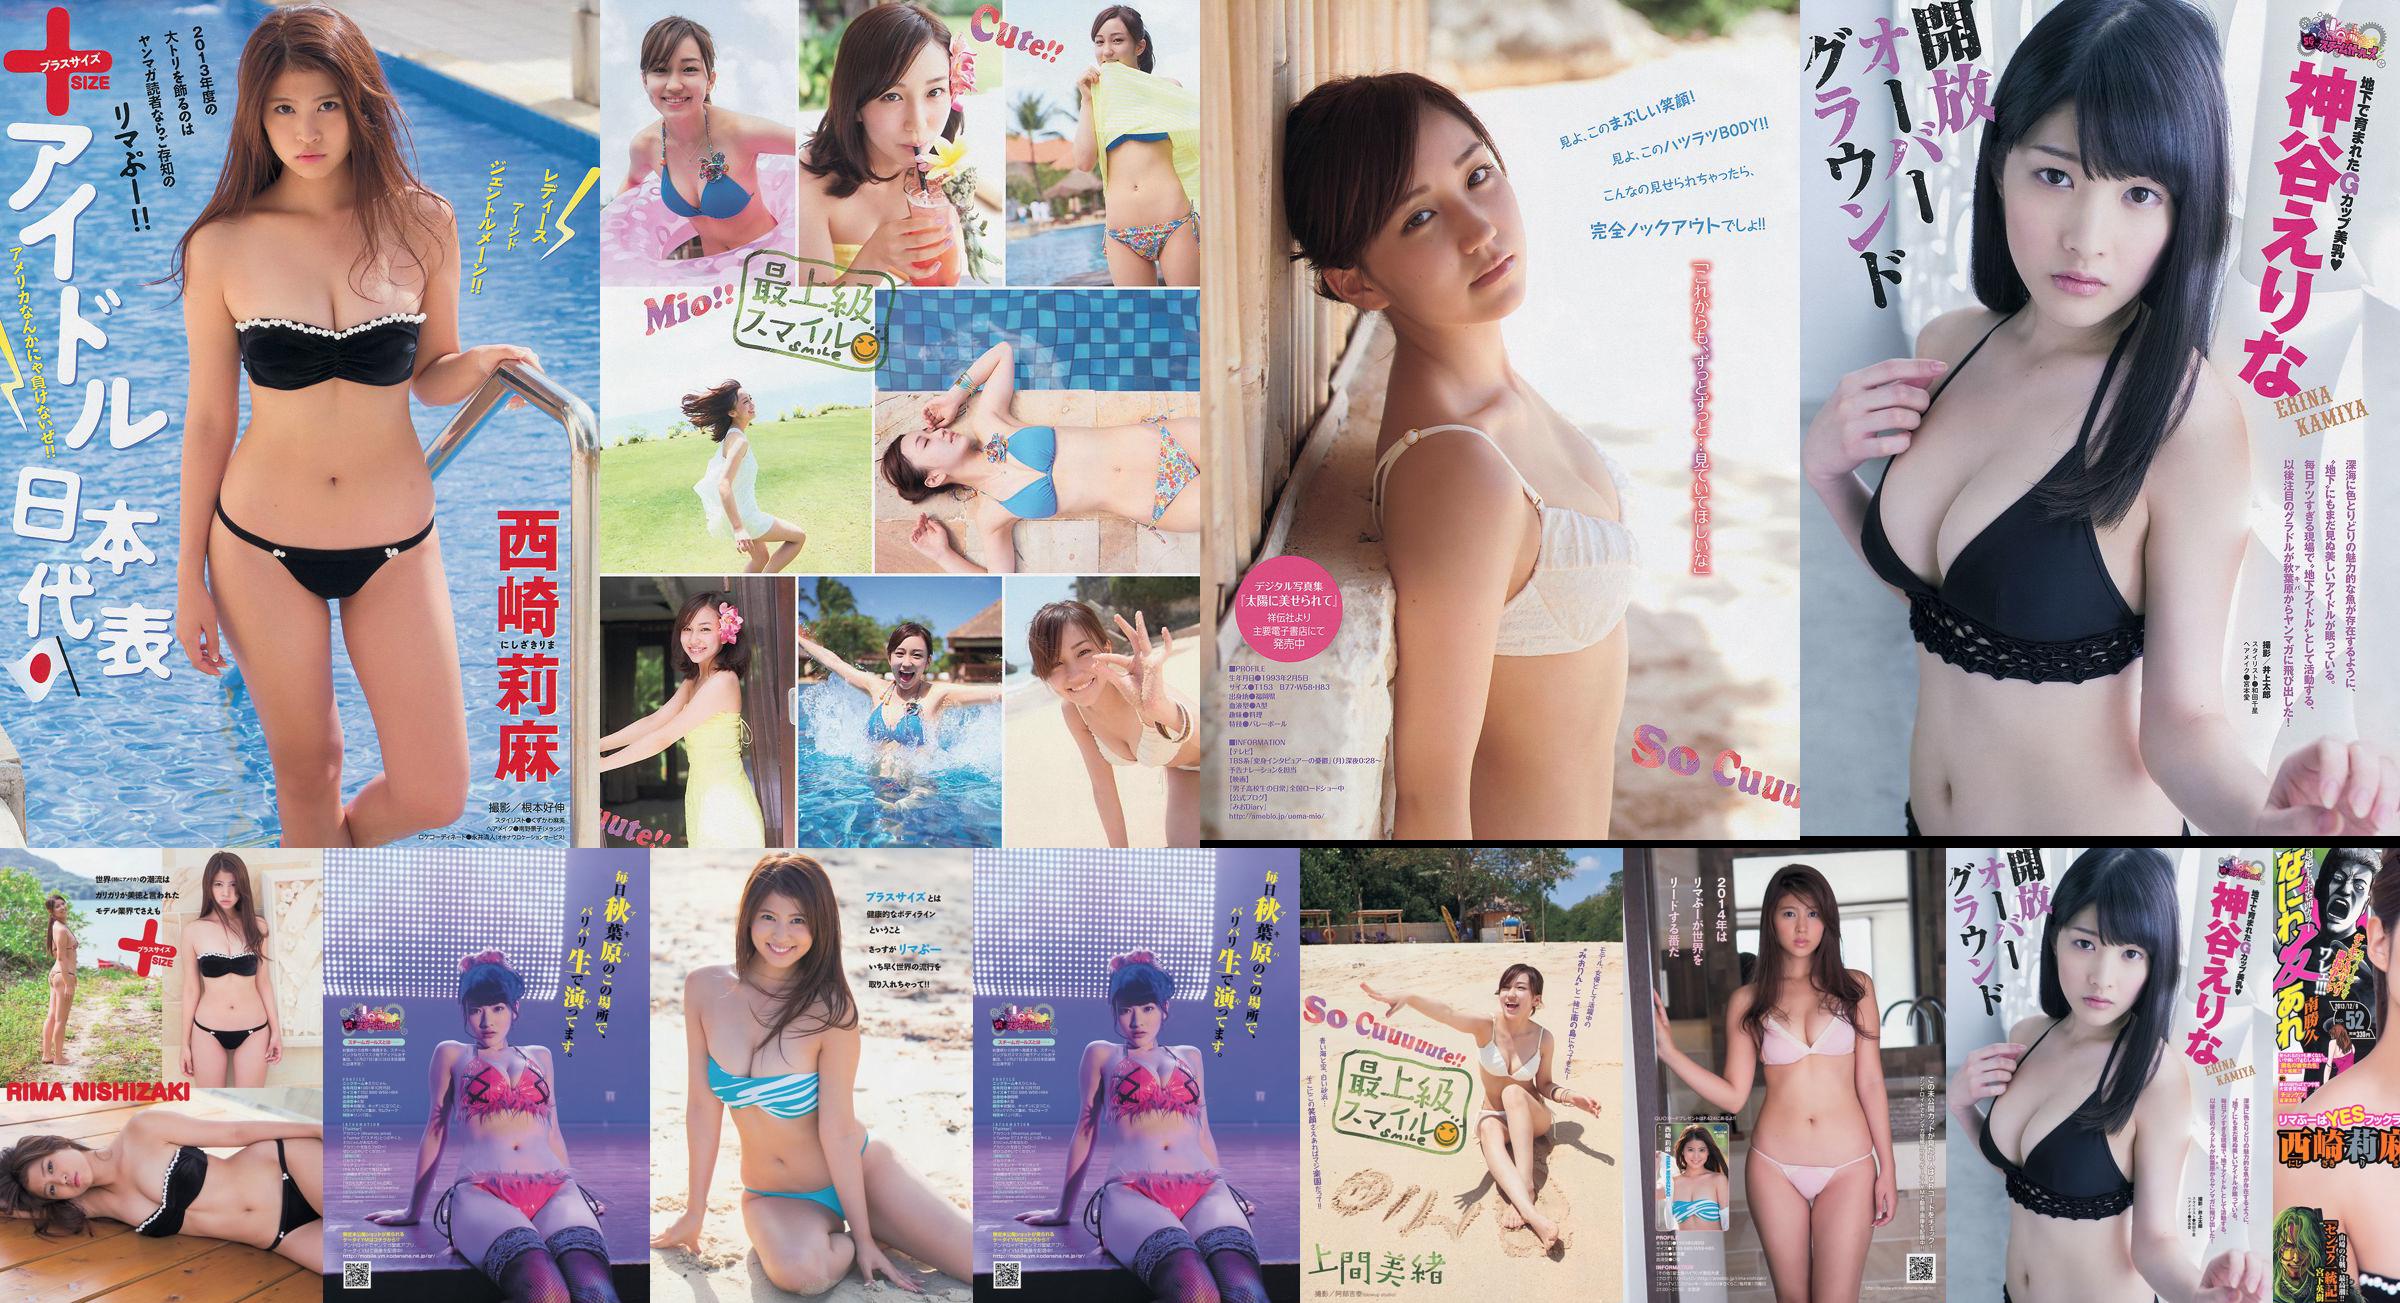 [Young Magazine] Rima Nishizaki Mio Uema Erina Kamiya 2013 No.52 Photo Moshi No.86e502 第1頁